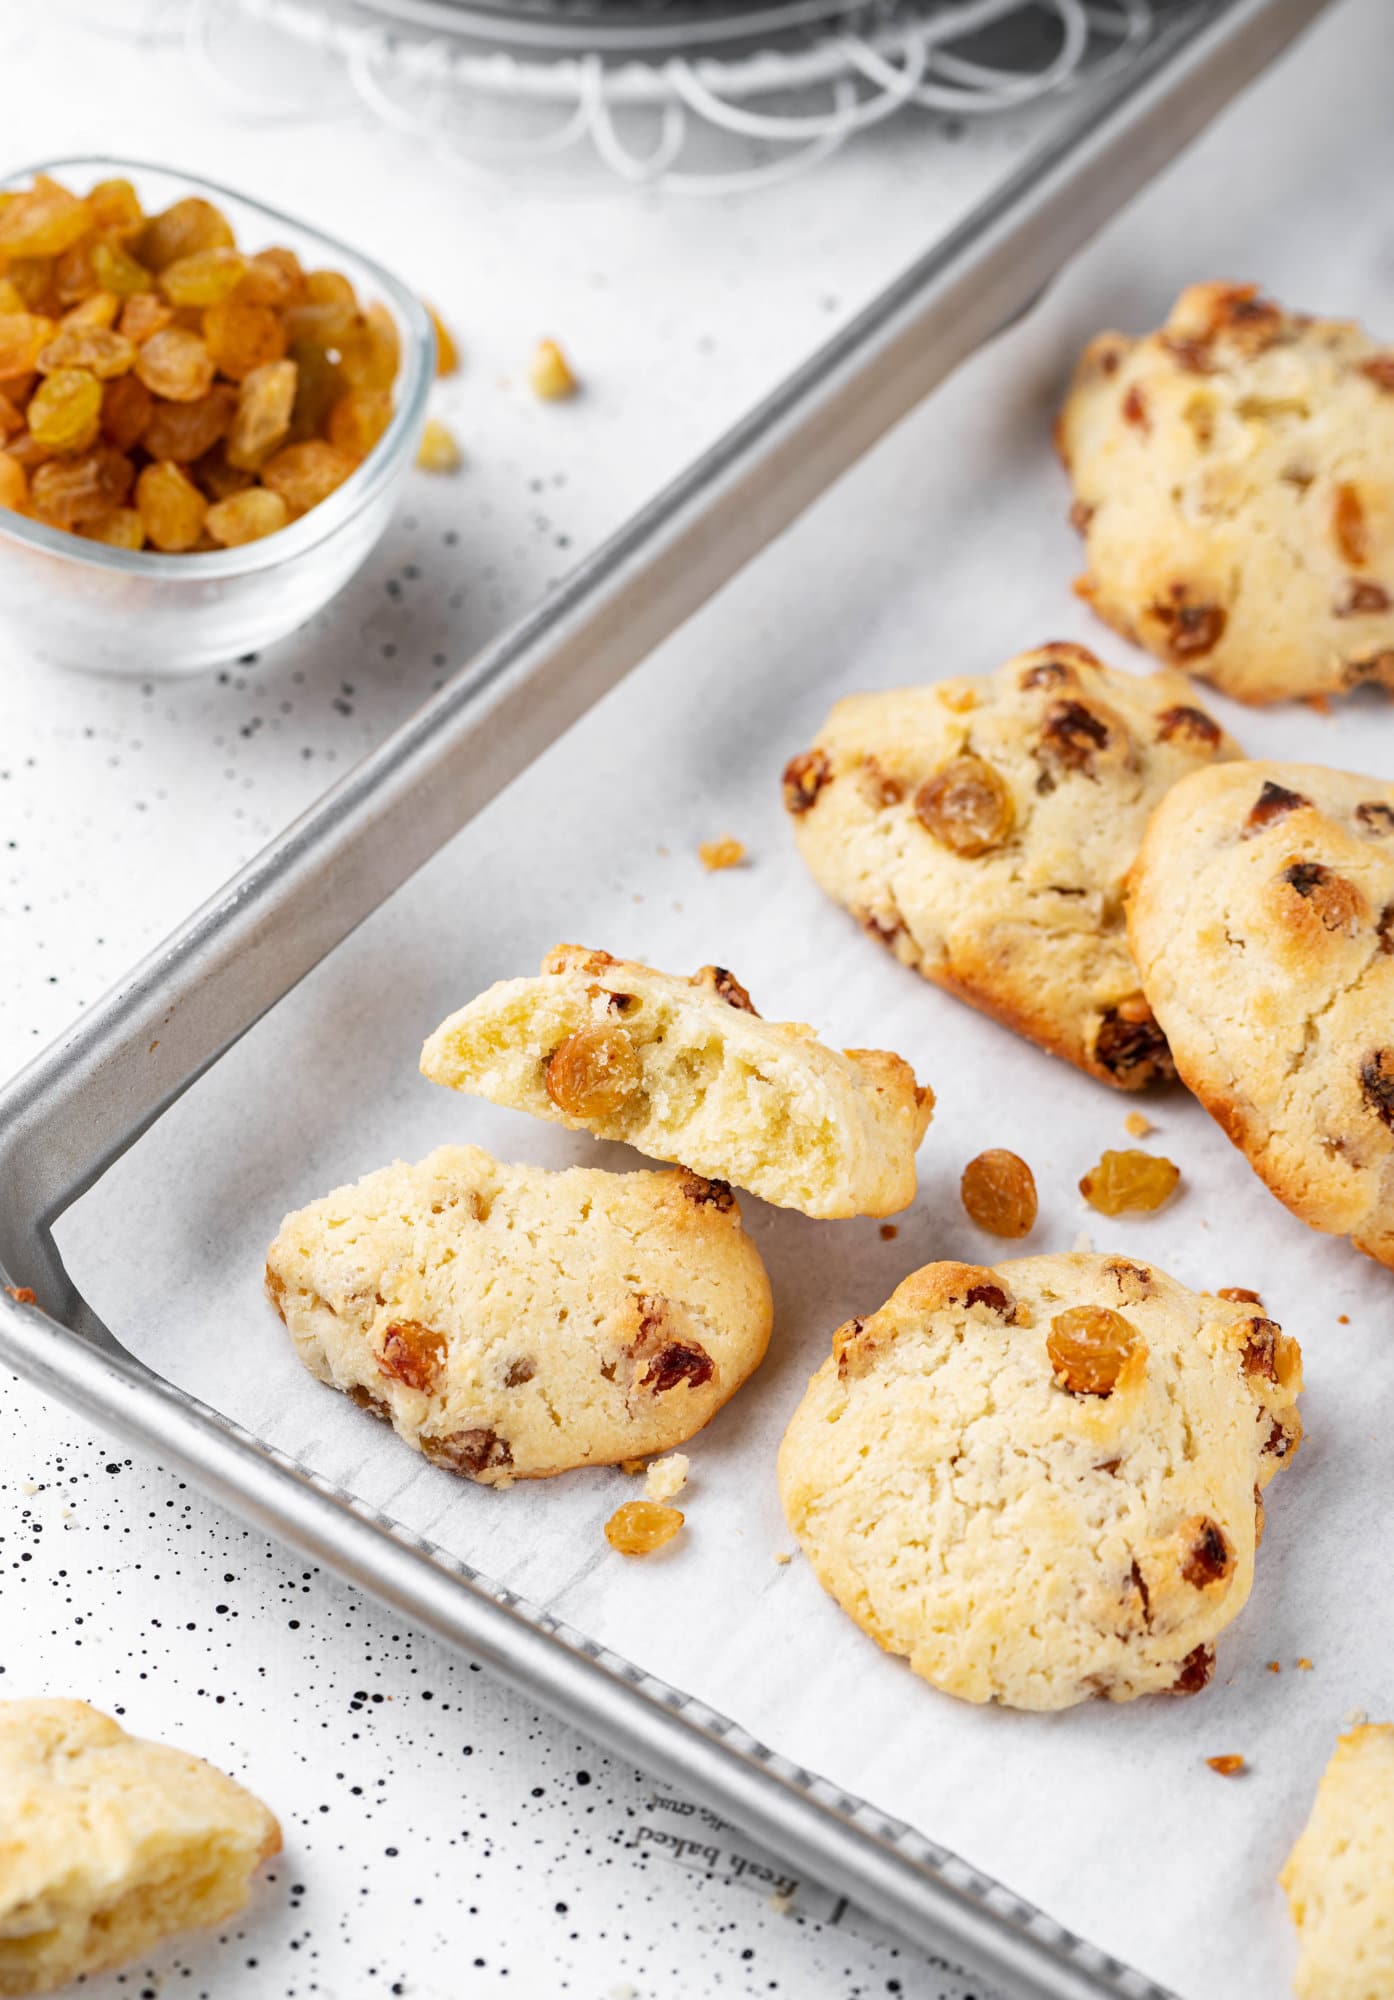 Fresh baked golden raisin cookies on a baking tray.